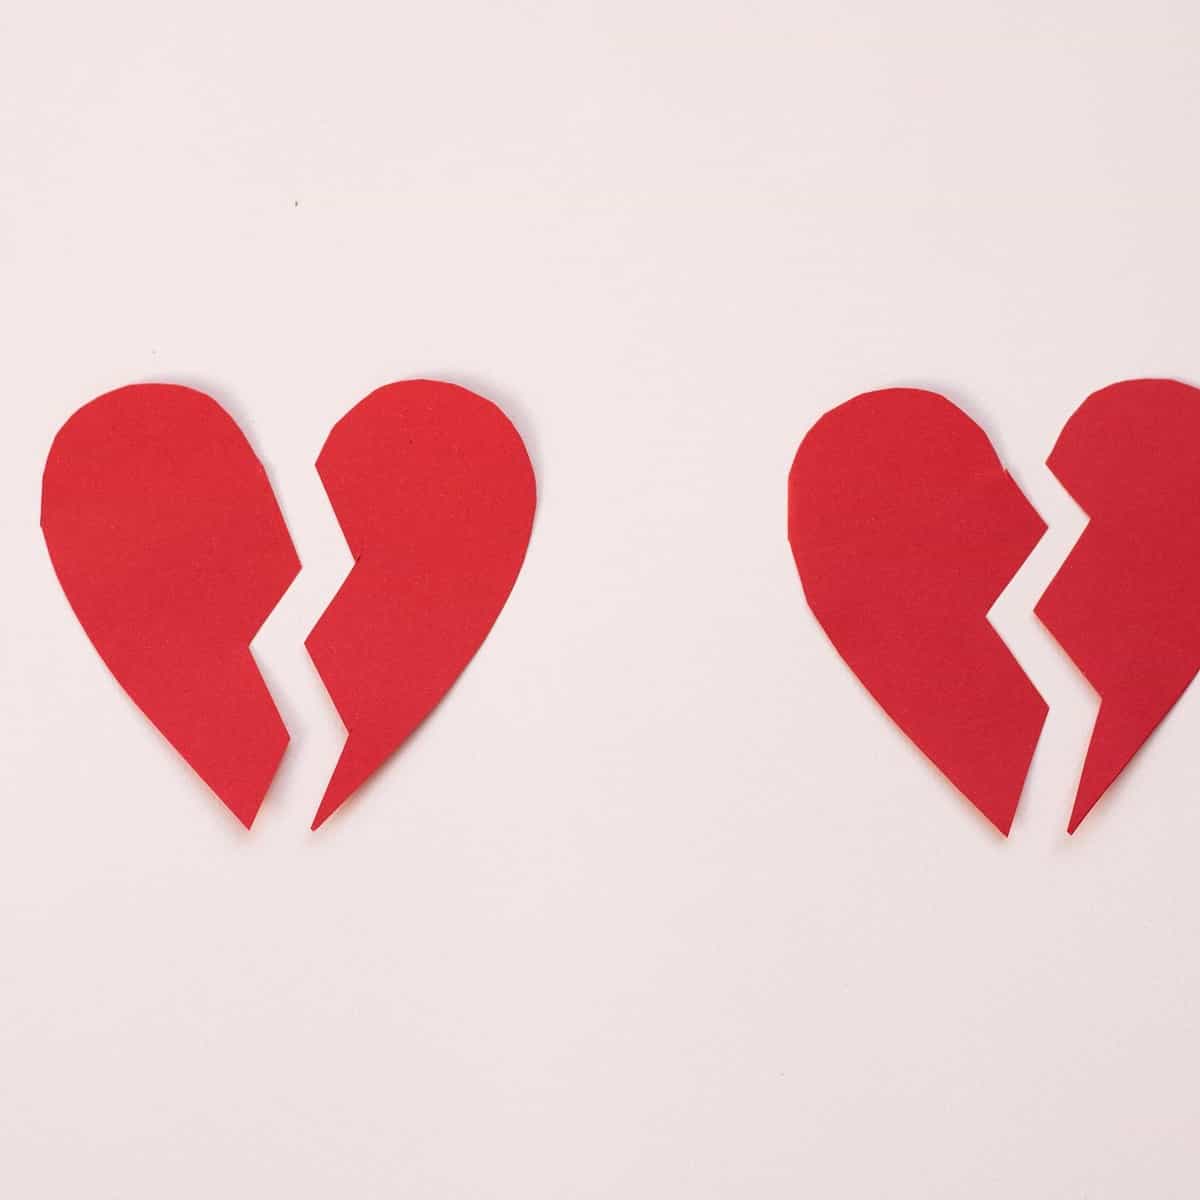 Foto de dois corações de papel partidos ao meio.